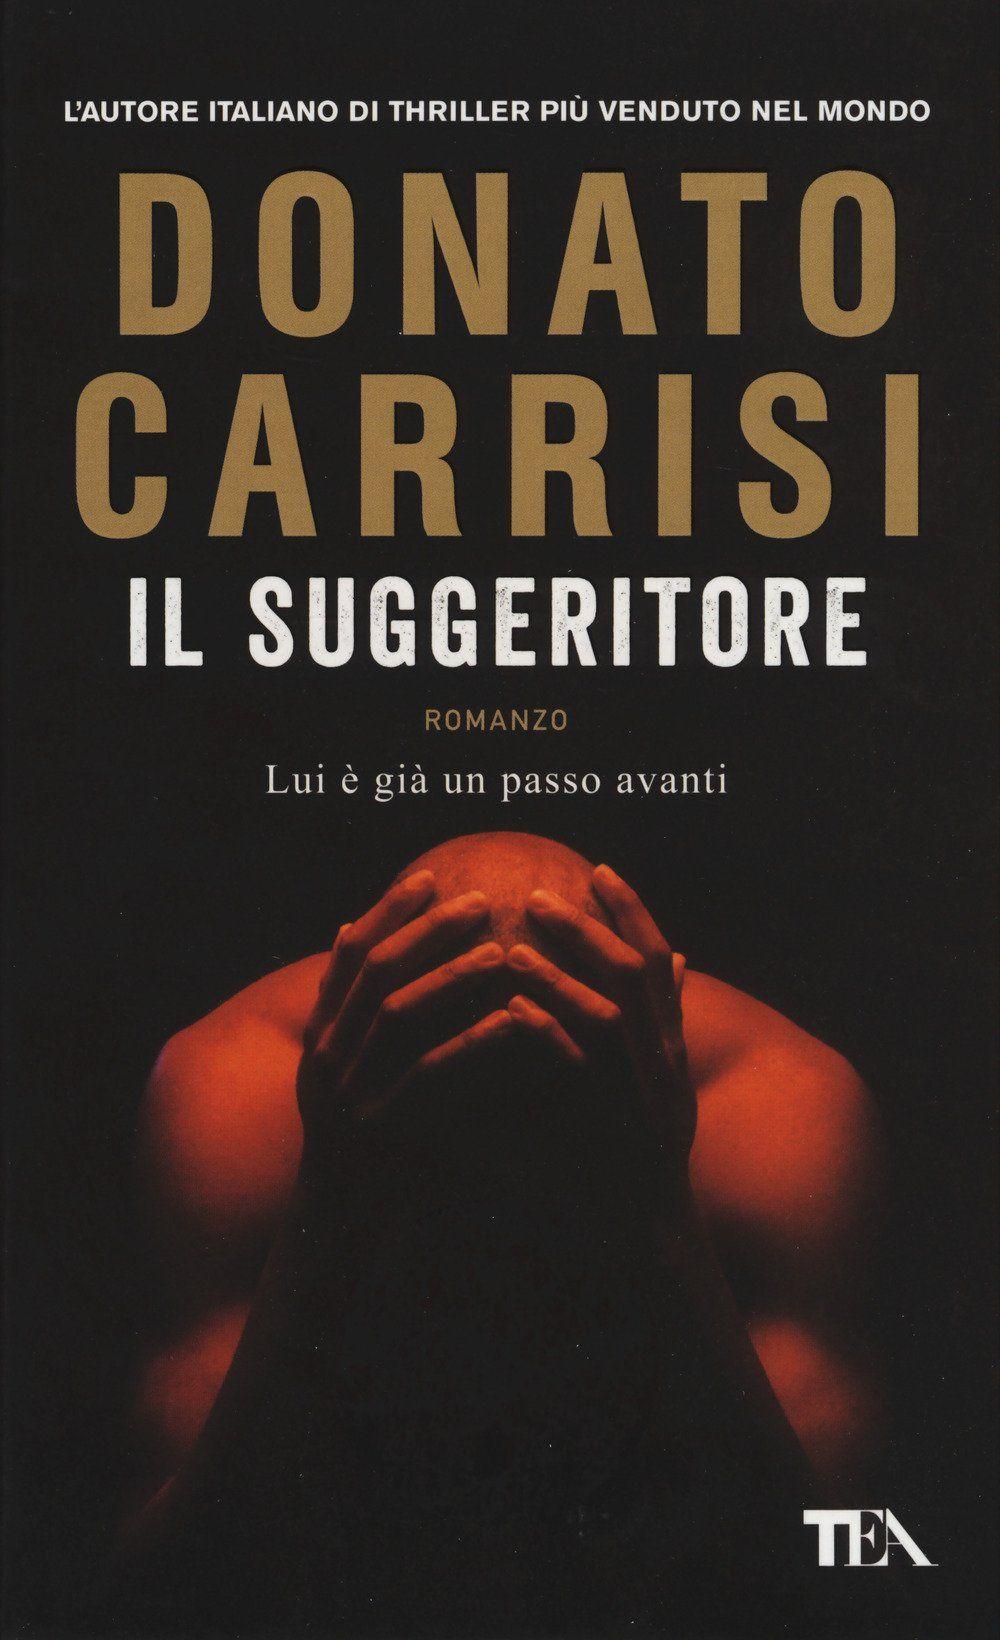 Libro "Il suggeritore" di Donato Carrisi